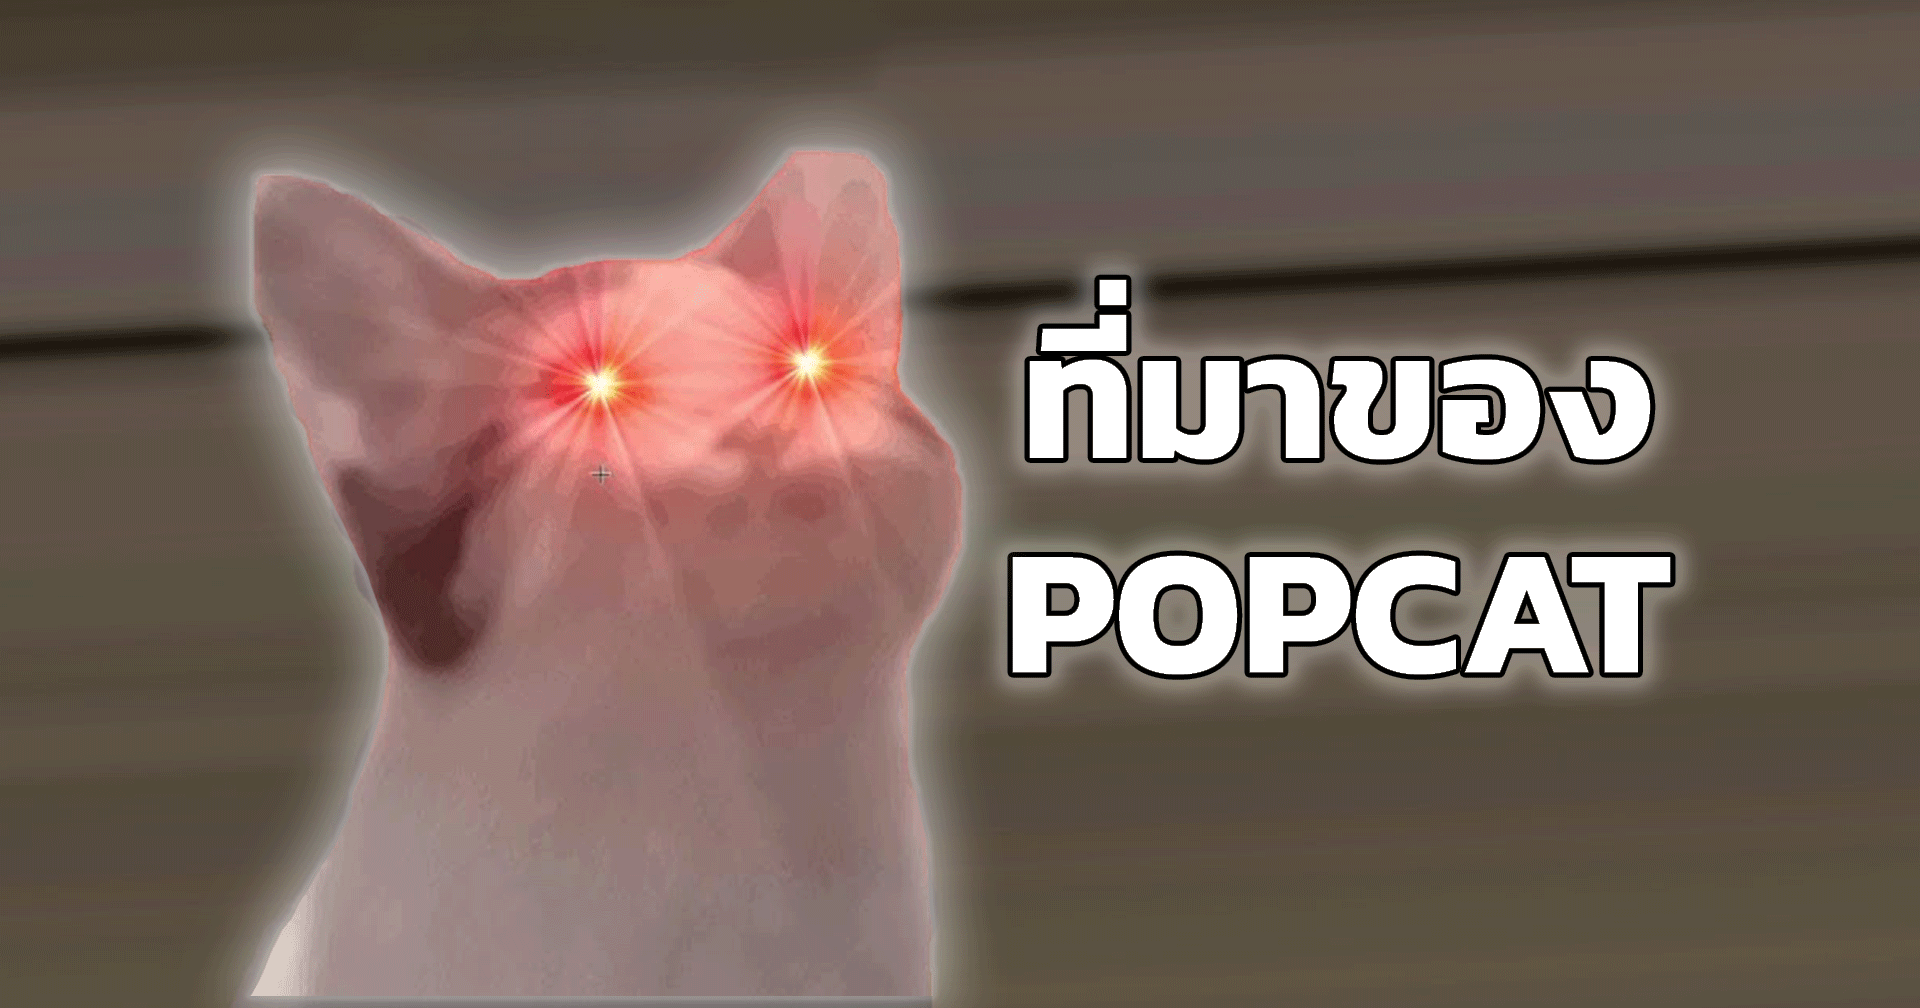 ที่มาของ POPCAT อะไรทำให้เจ้าแมวนี้กลายเป็นเกมติดกระแสบนโลกโซเชียลกันนะ?